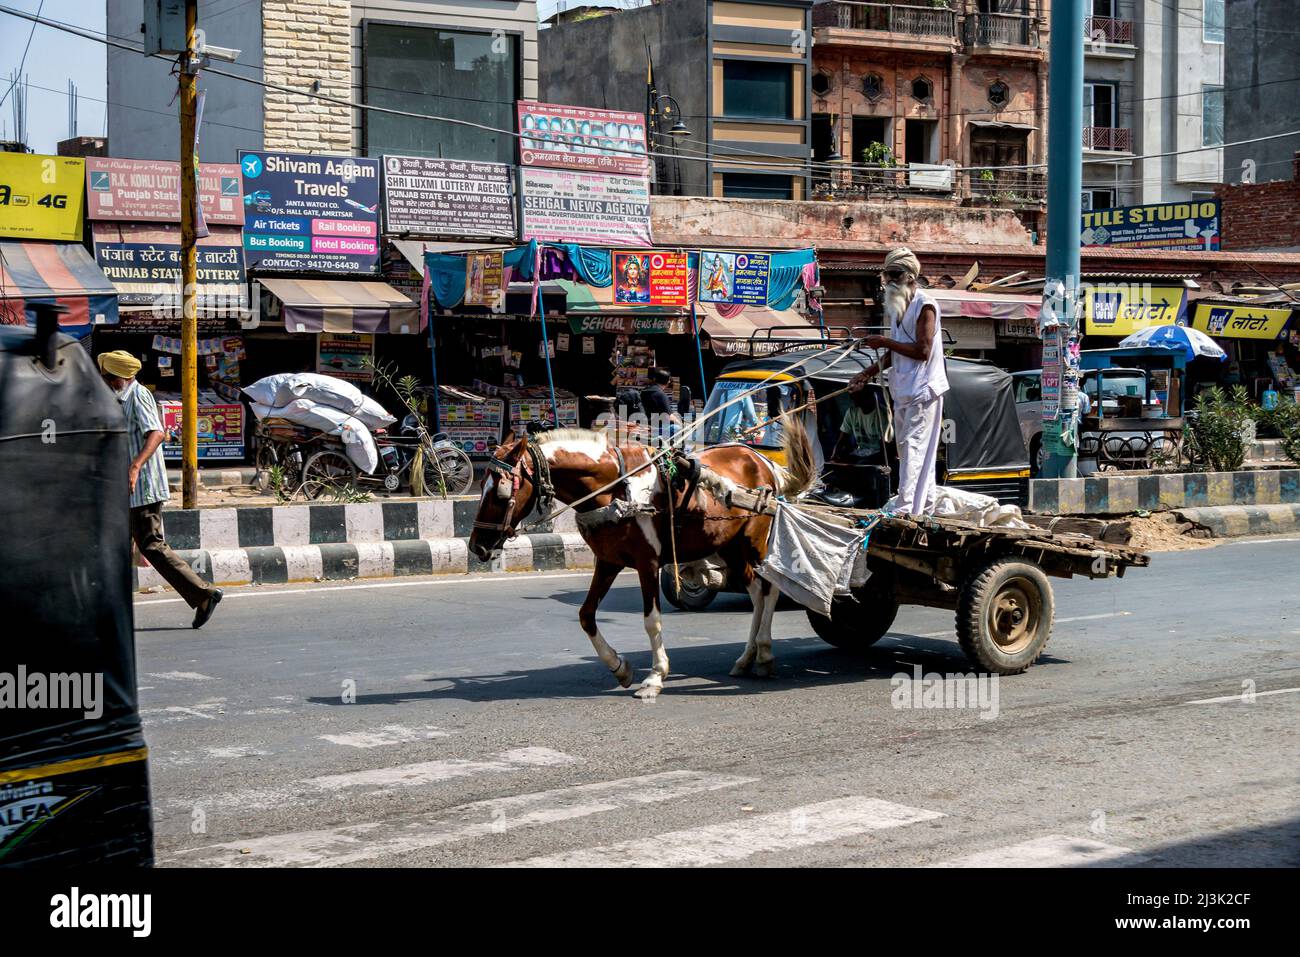 El hombre se para en un carro tirado por un caballo por una calle llena de tiendas en una ciudad de la India; Amritsar, Punjab, India Foto de stock